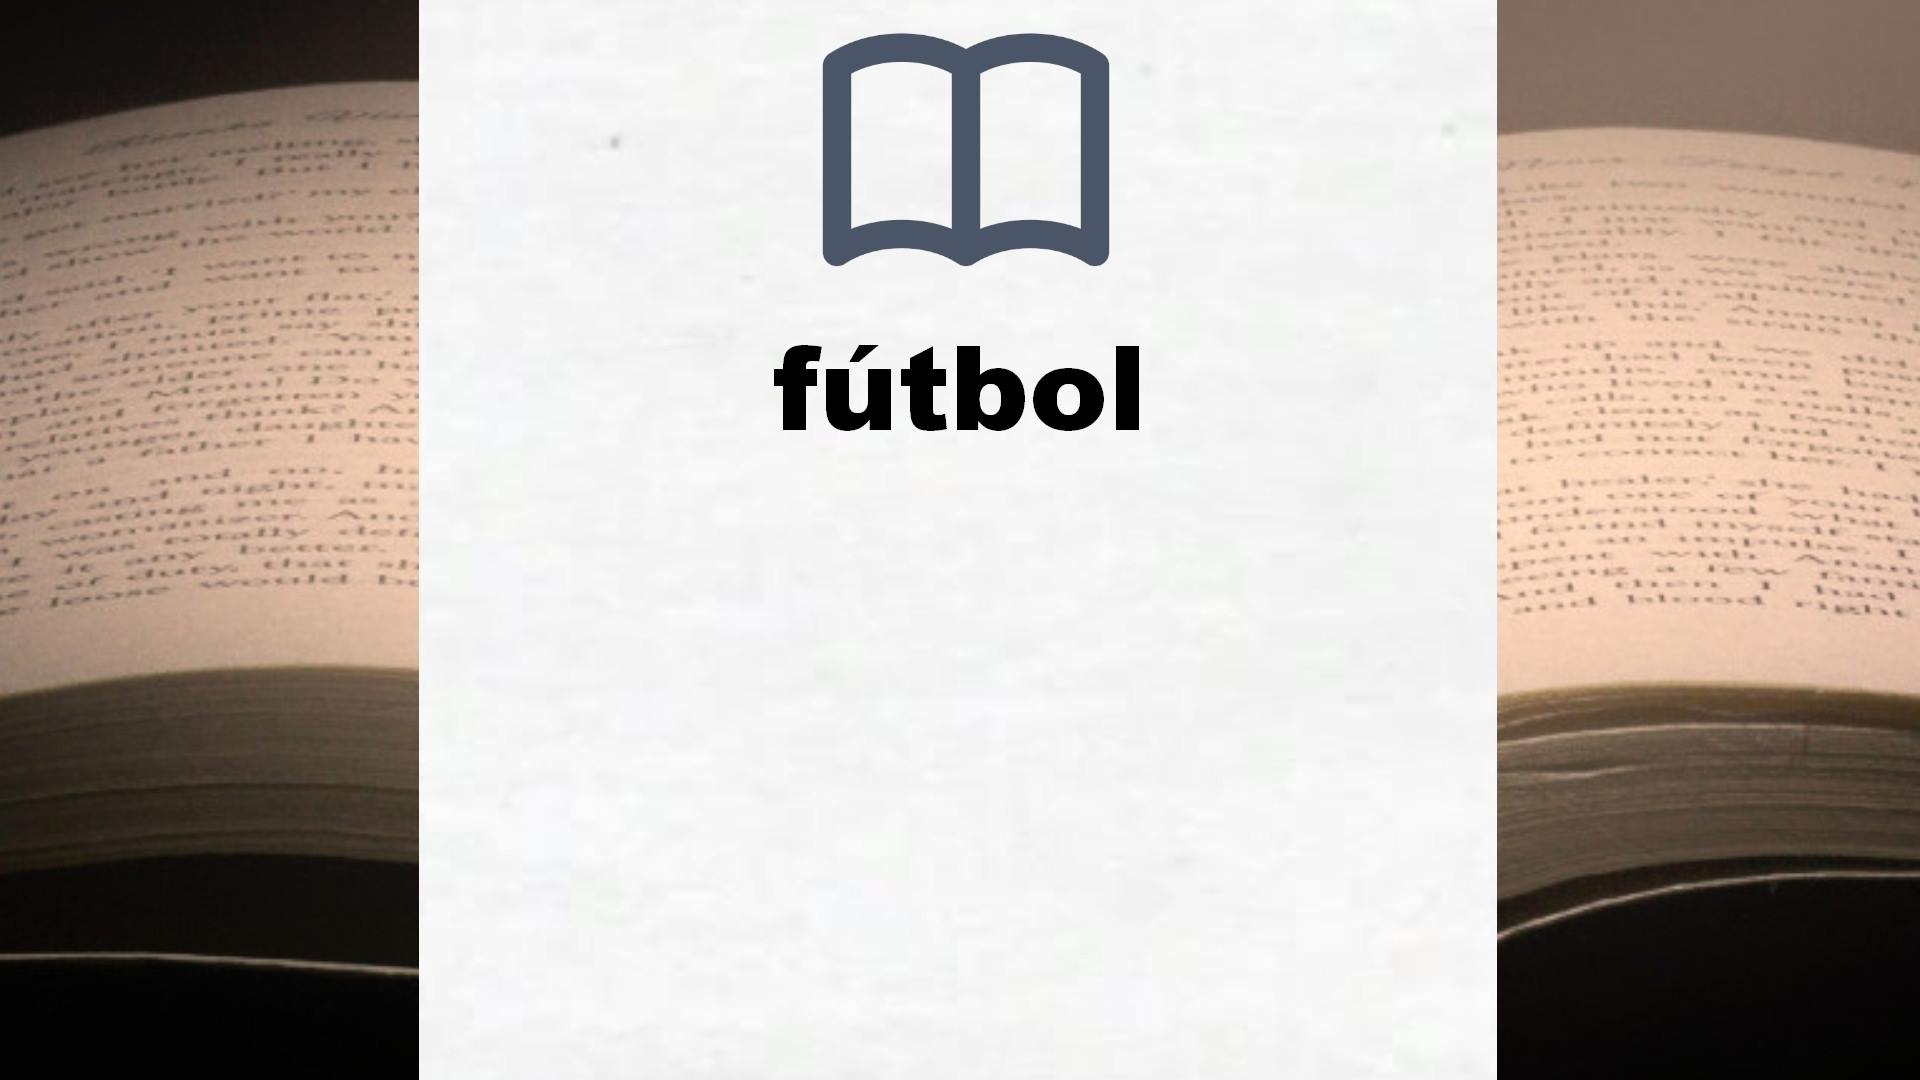 Libros sobre fútbol